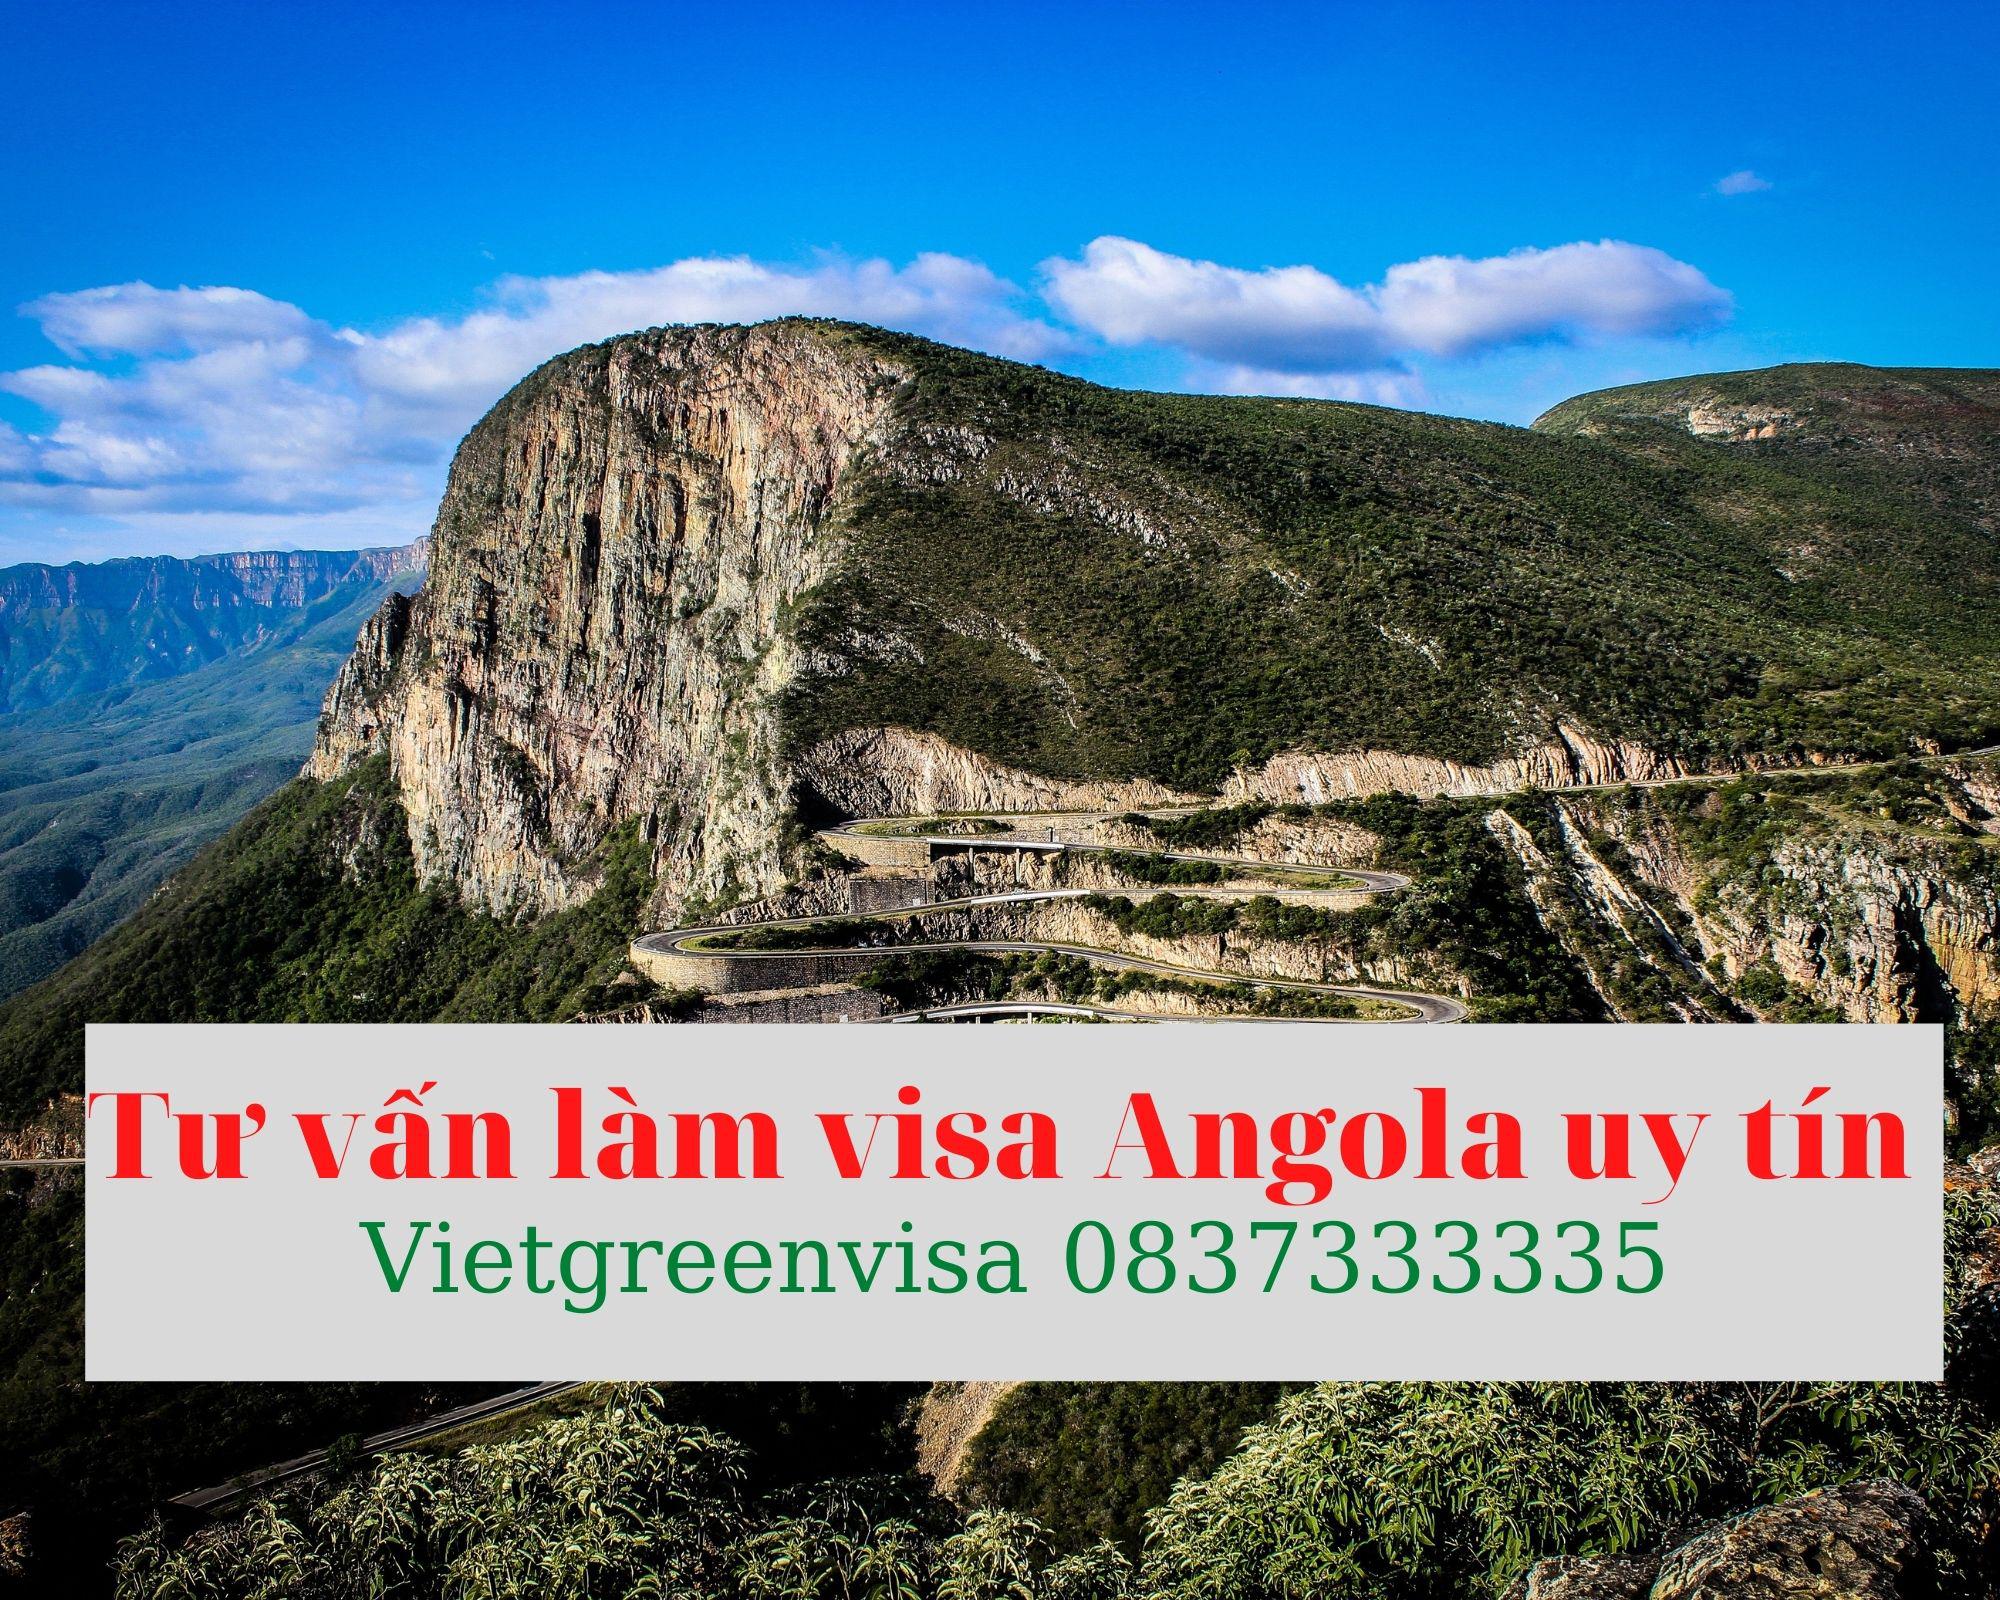 Tư vấn làm visa Angola uy tín và chuyên nghiệp